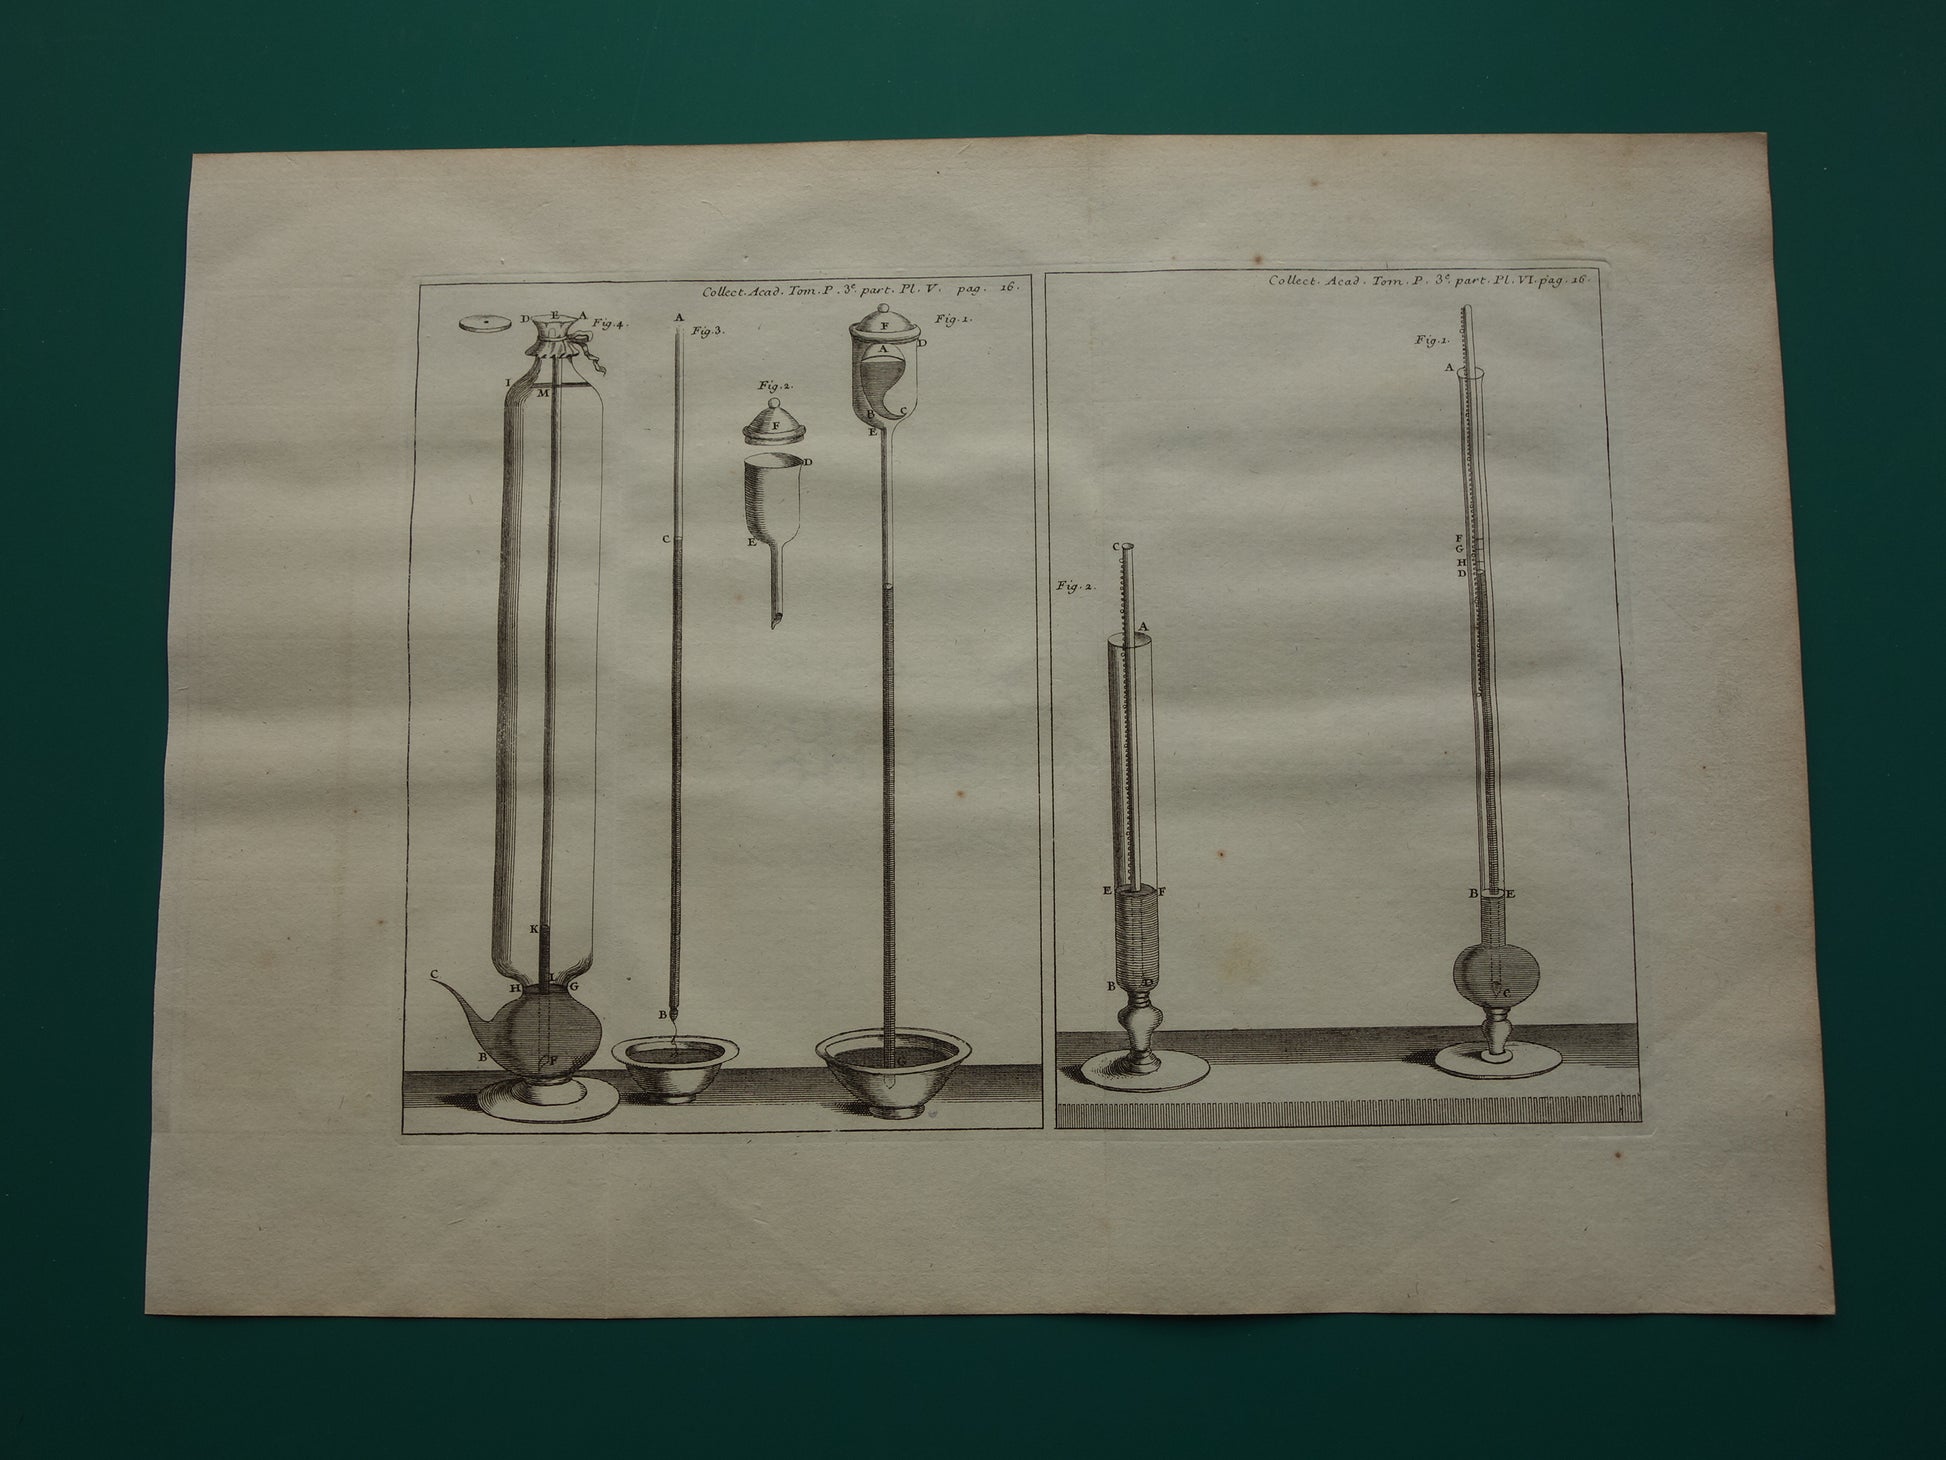 Vintage prent natuurkunde experimenten luchtdruk 1755 originele antieke illustratie van laboratorium proeven met kwik